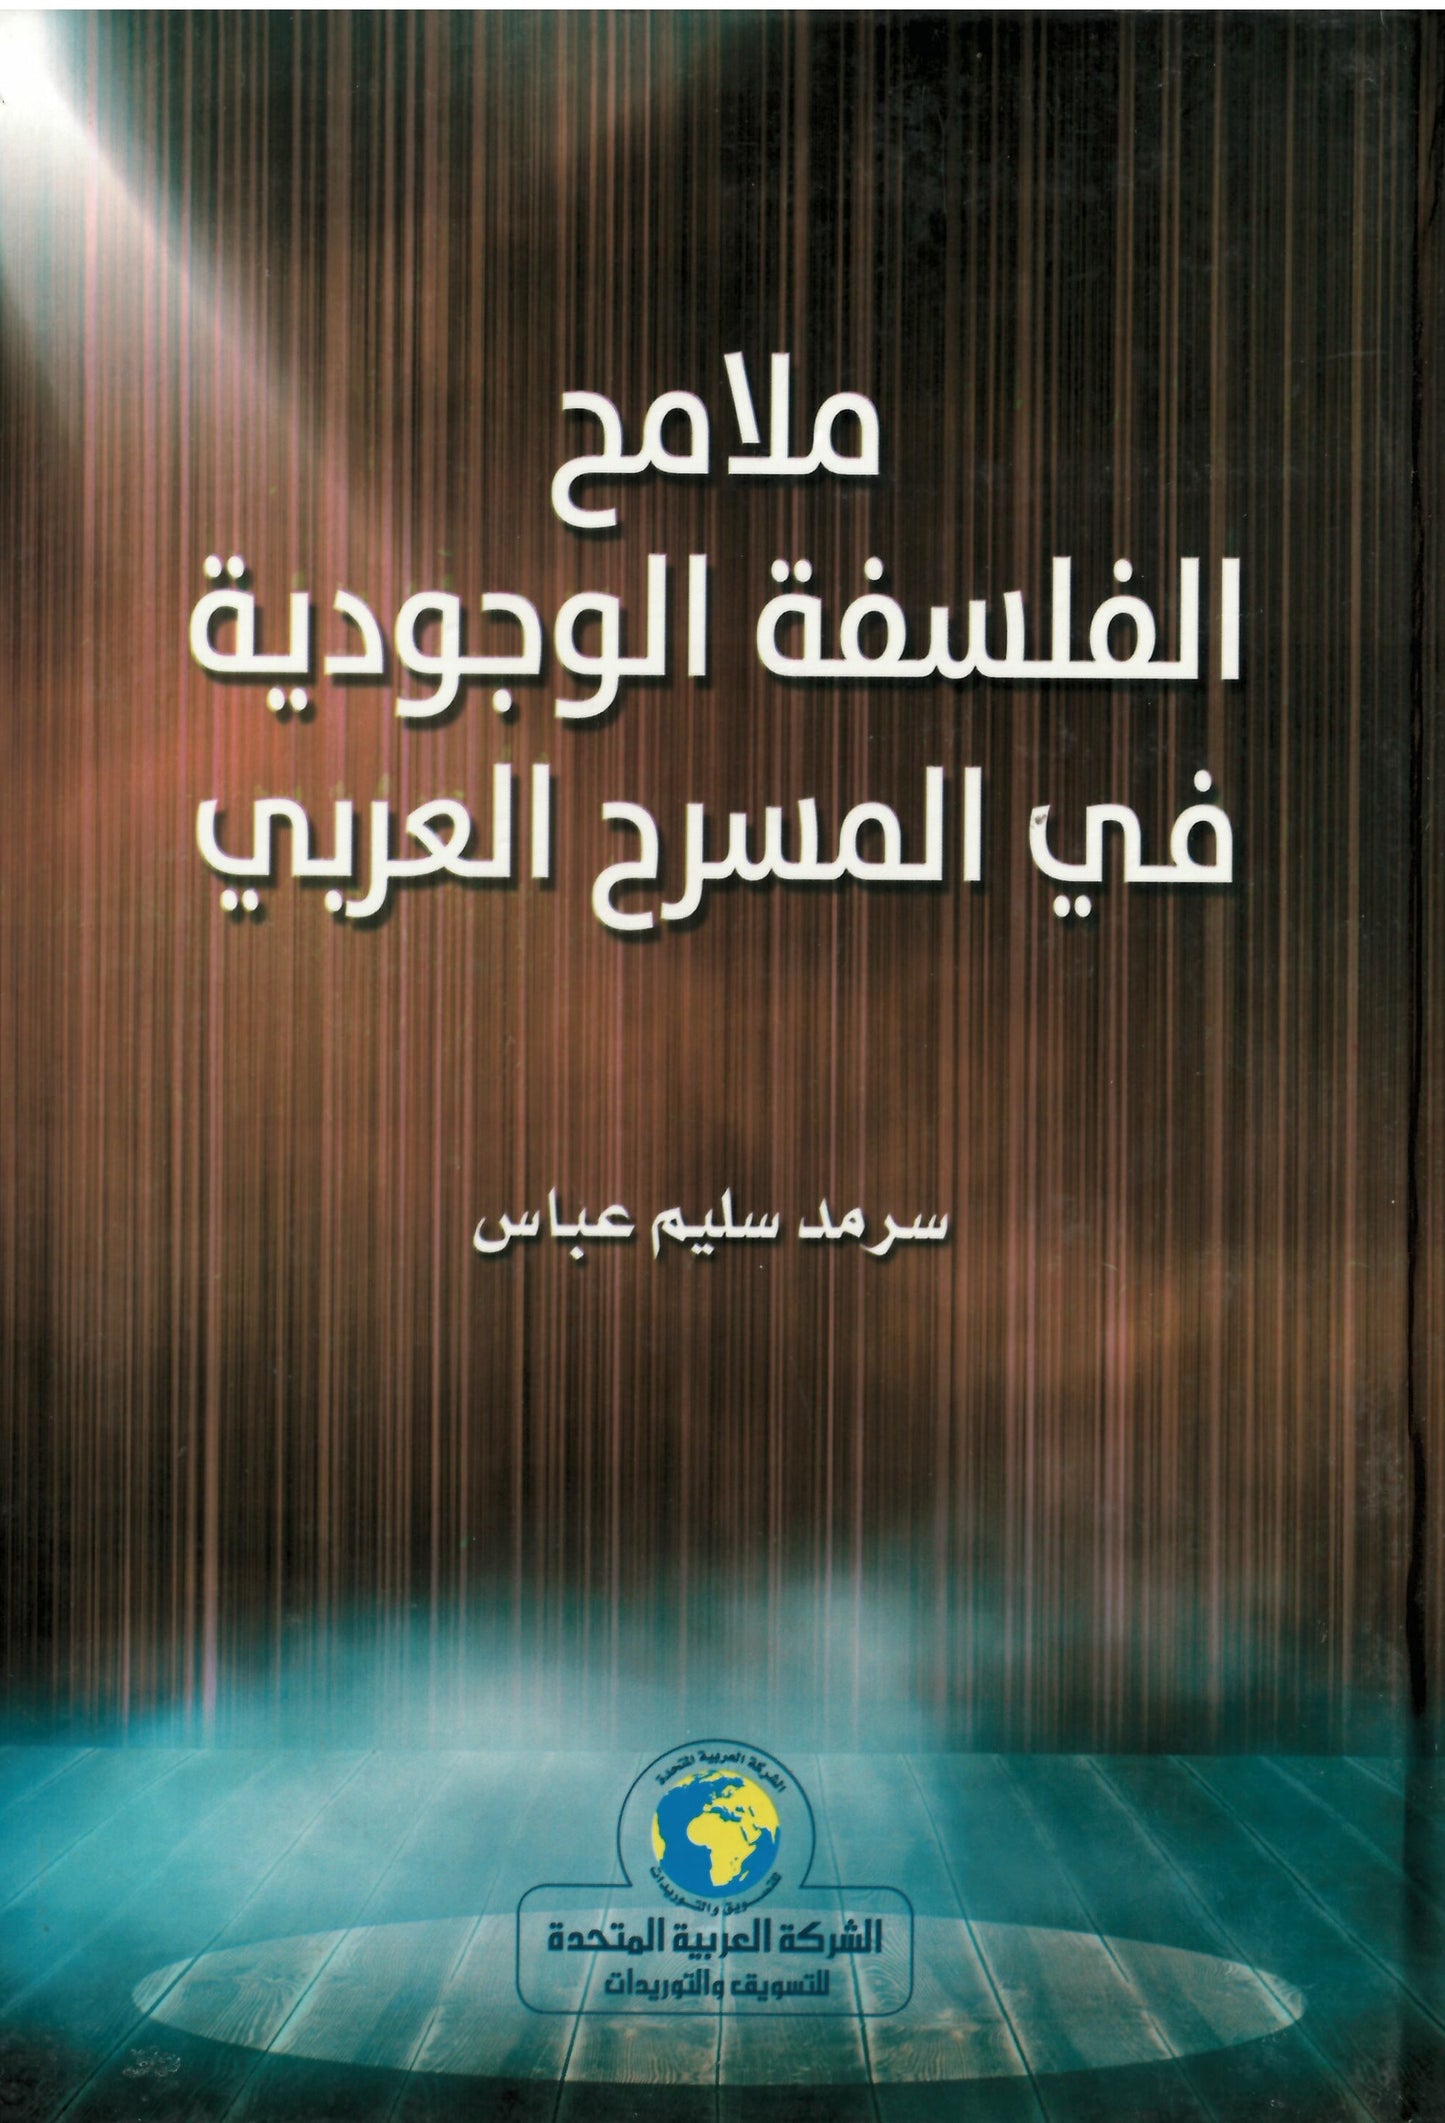 ملامح الفلسفة الوجودية في المسرح العربي